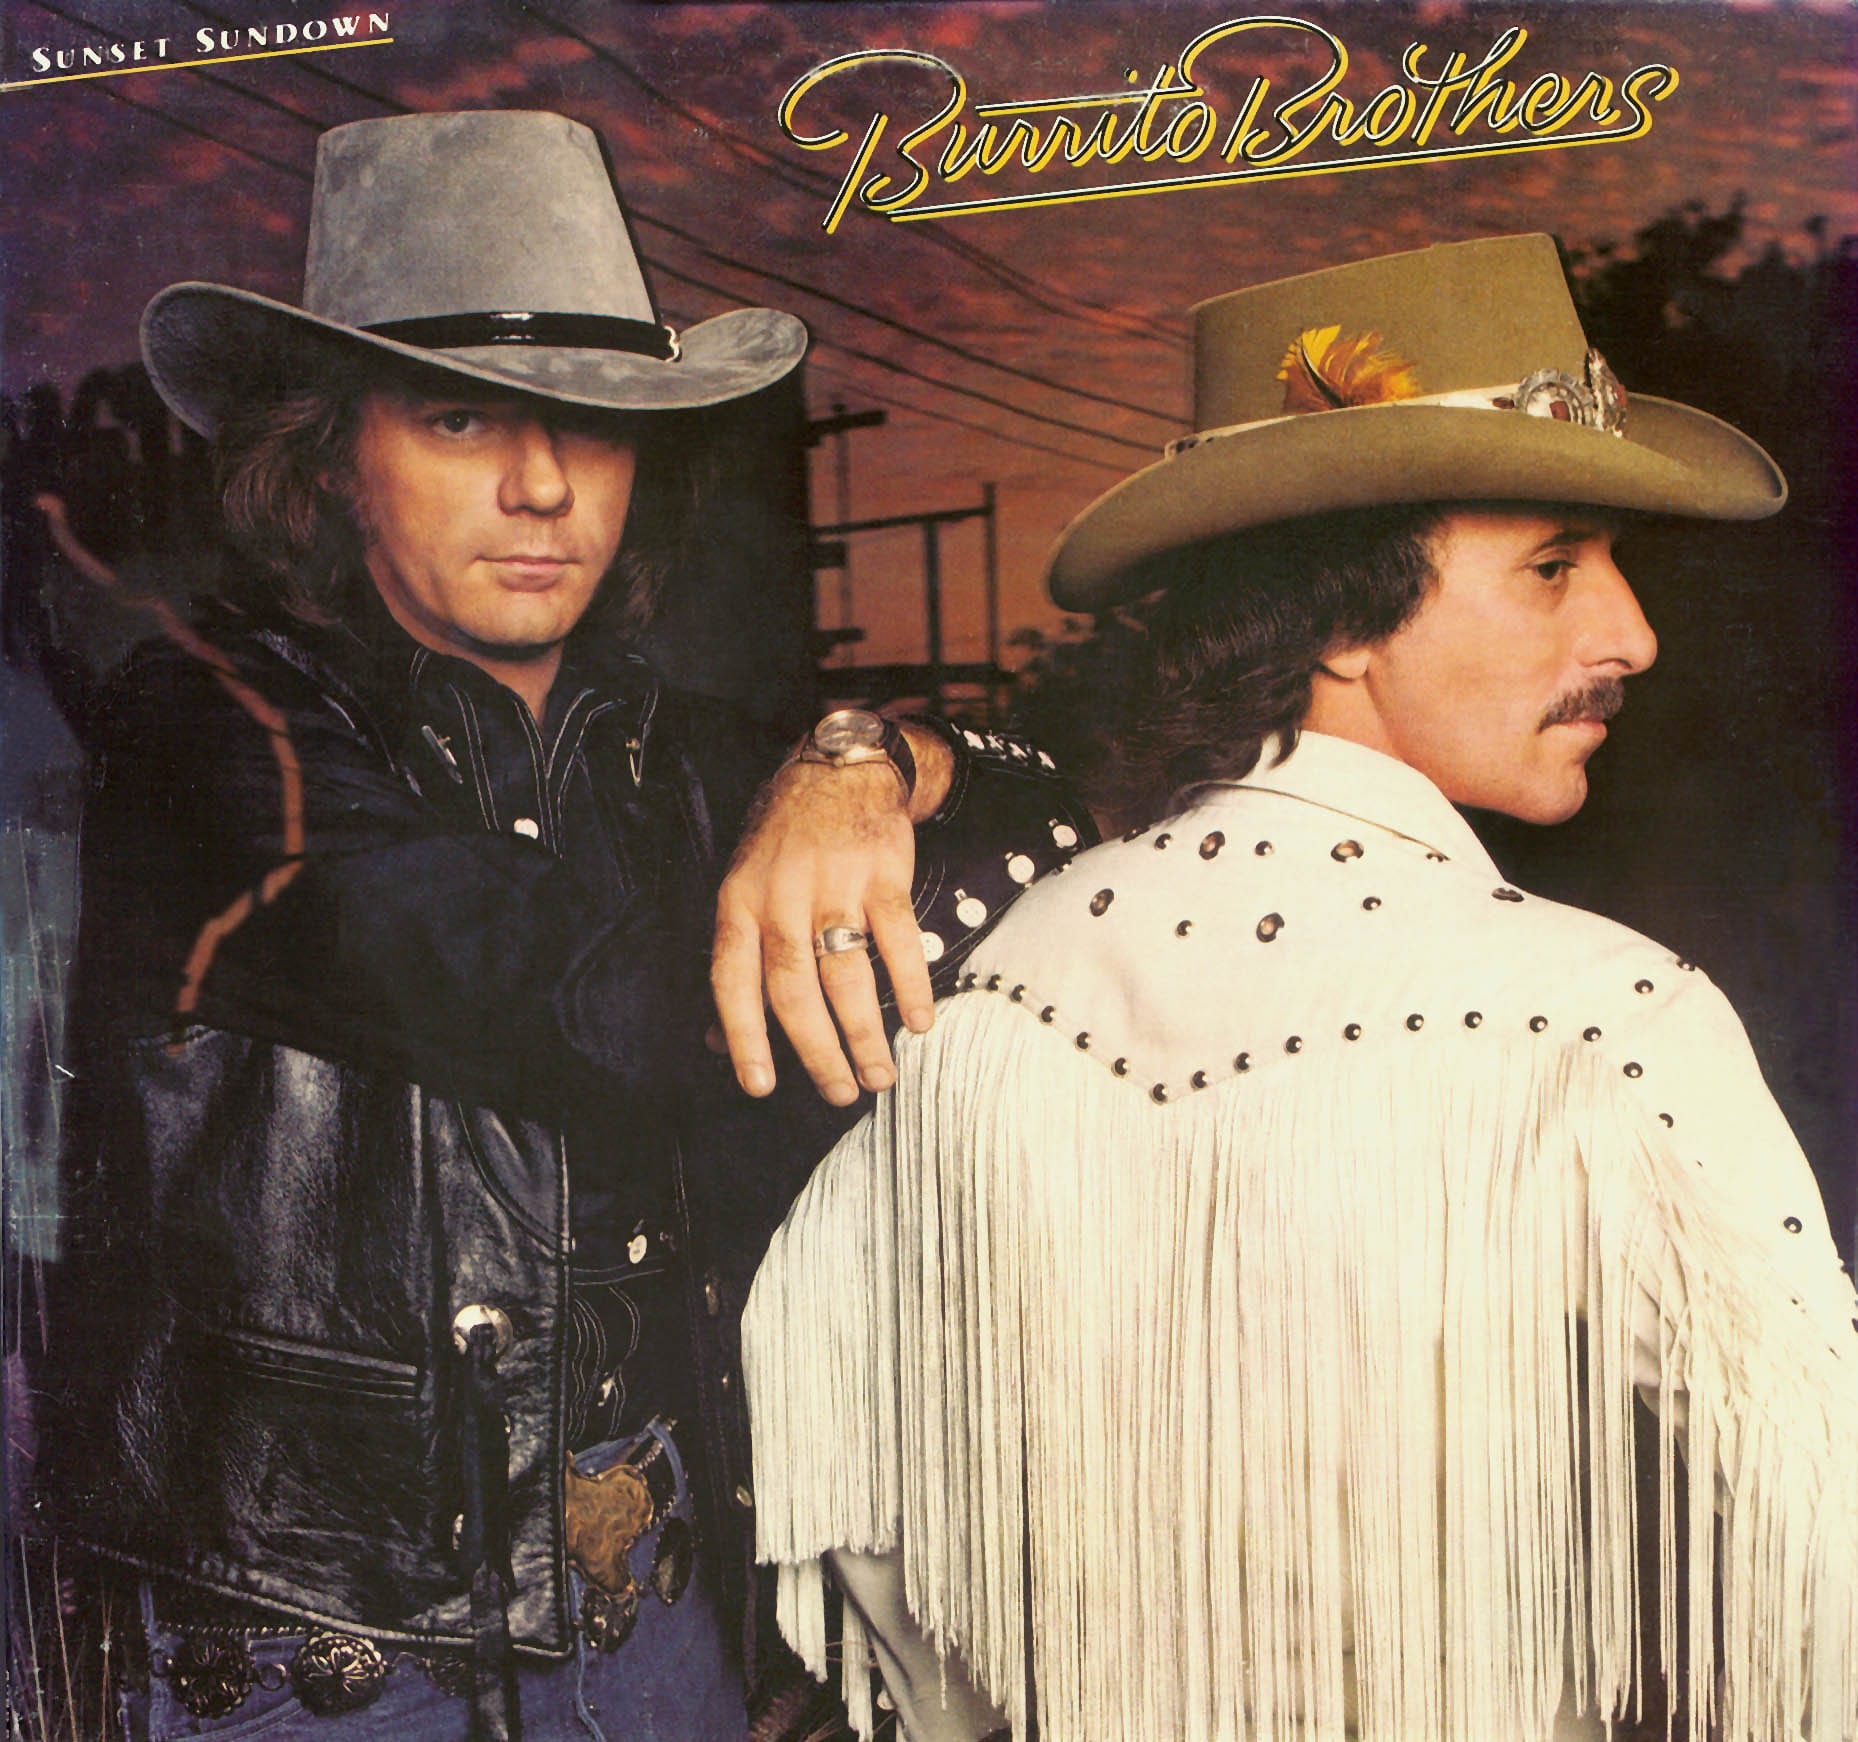 Burrito Brothers - Sunset Sundown (1982) CD 1